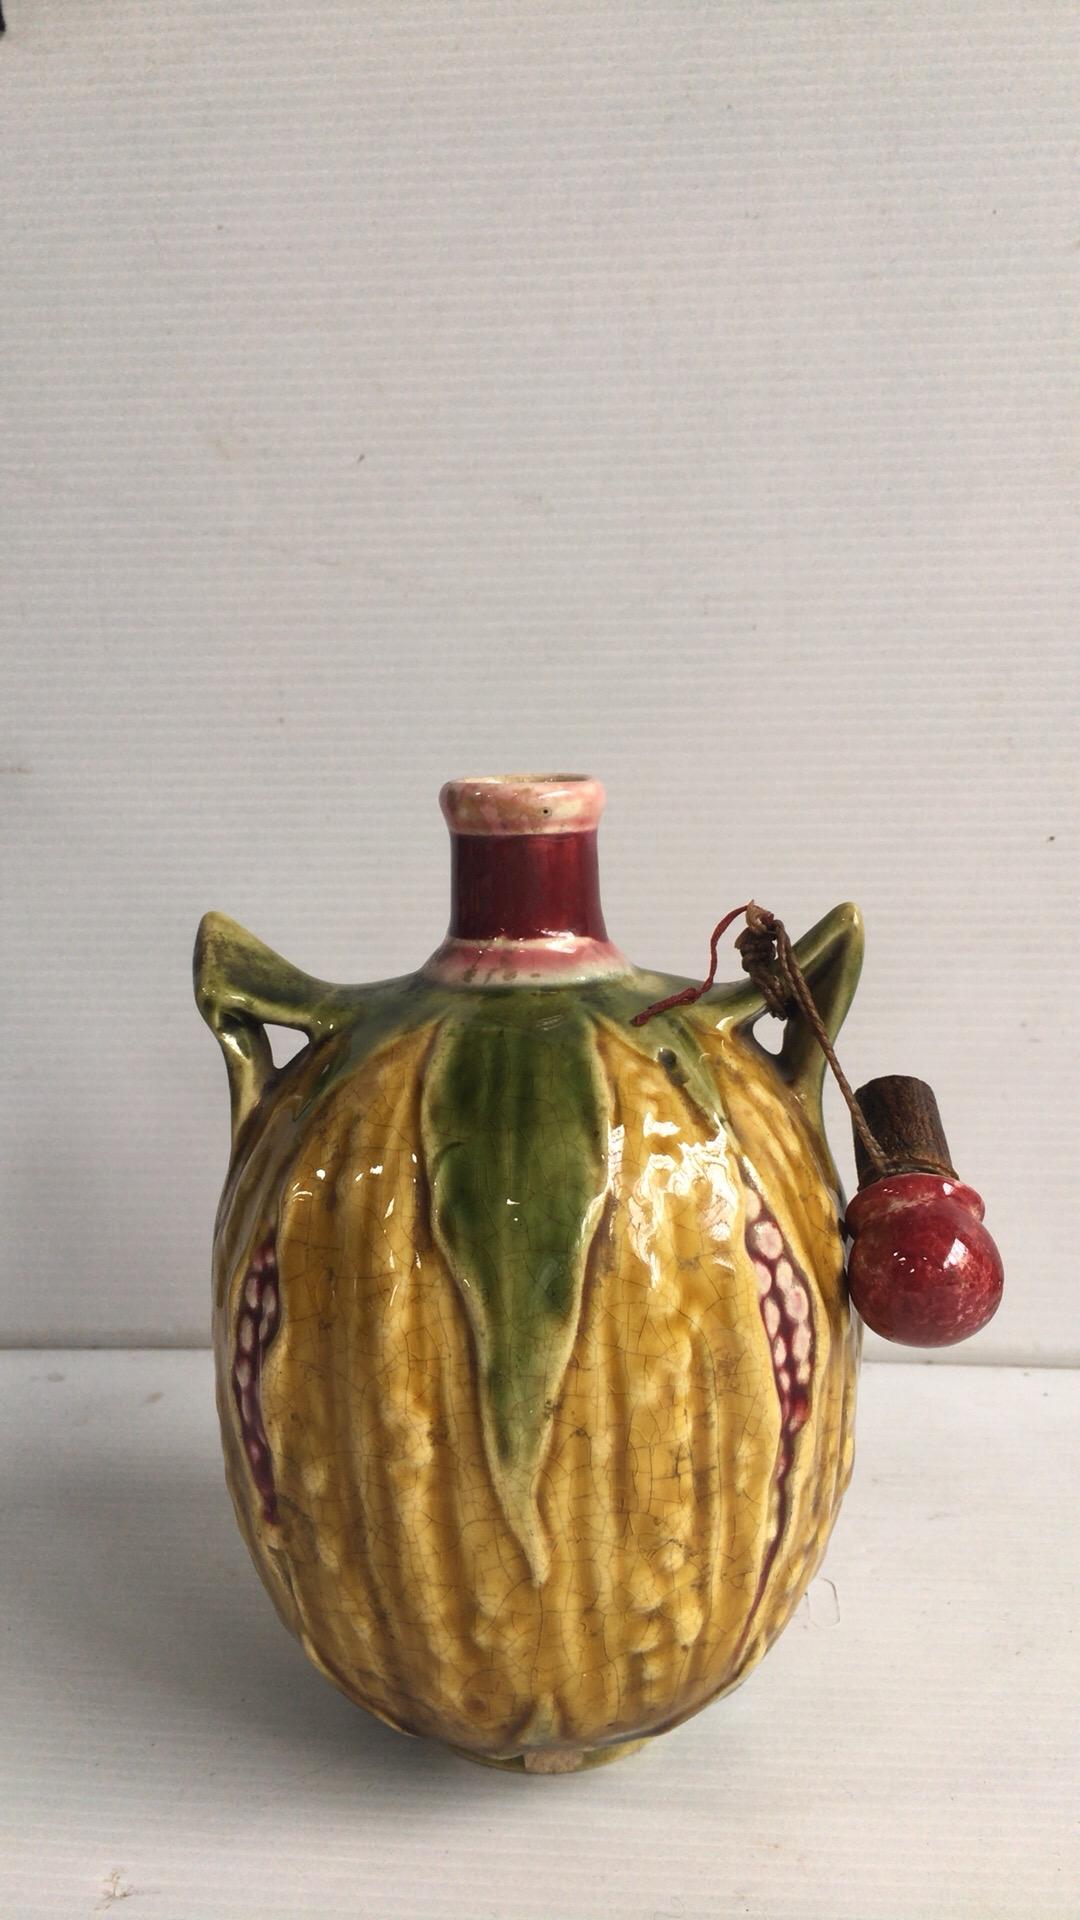 Unusual 19th century Majolica pomegranate liquor pitcher.